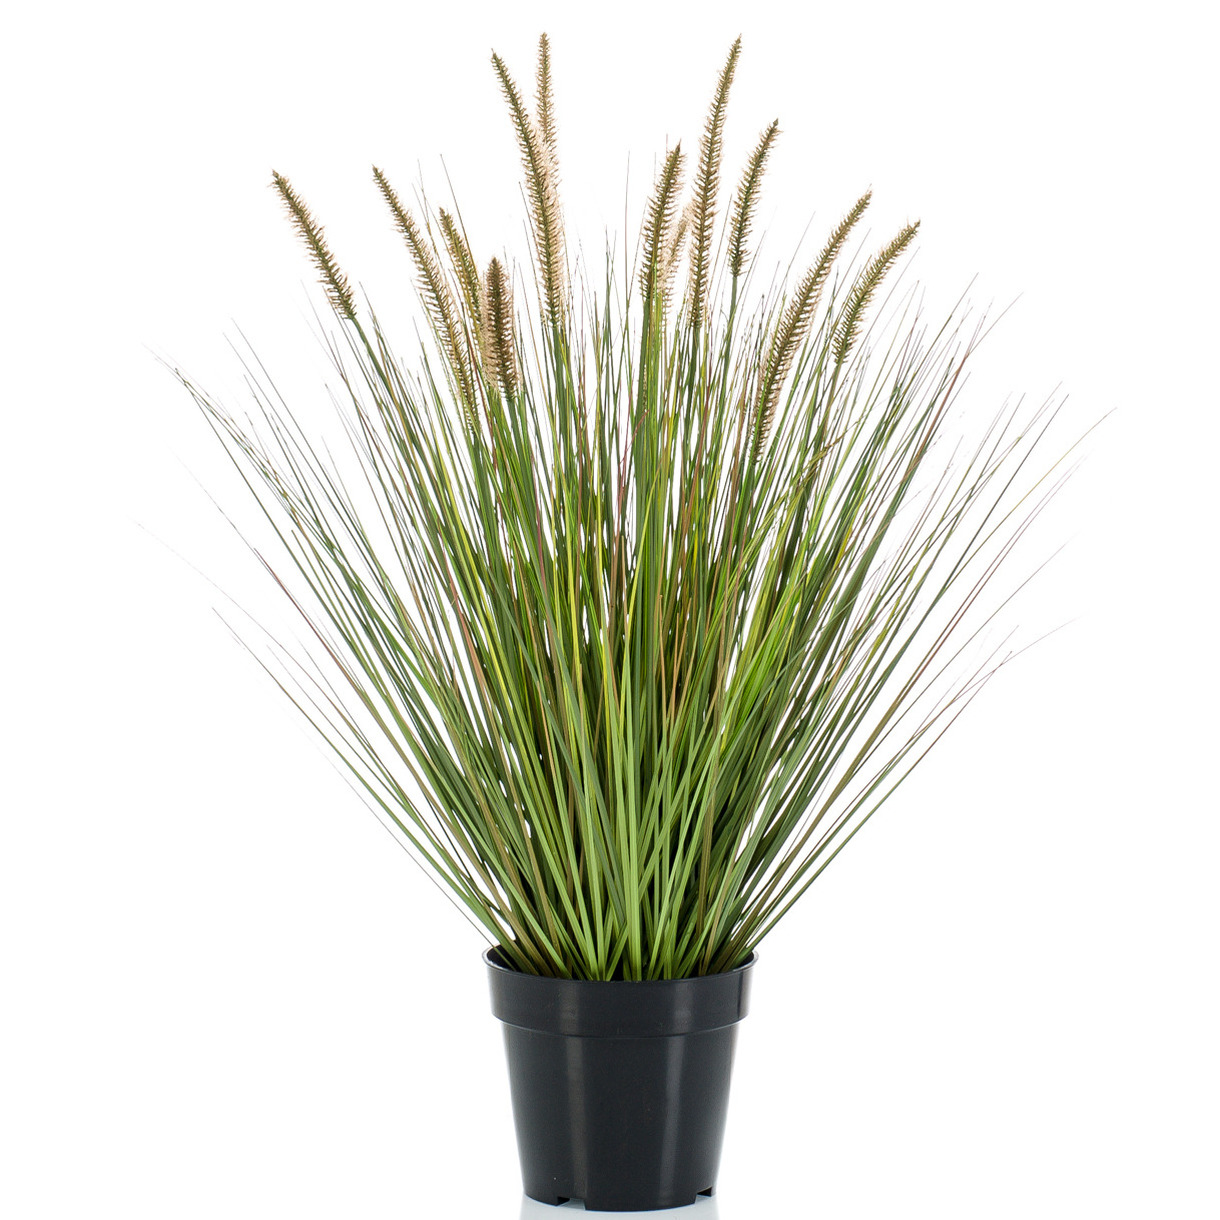 Kunstplant groen gras sprieten 71 cm.